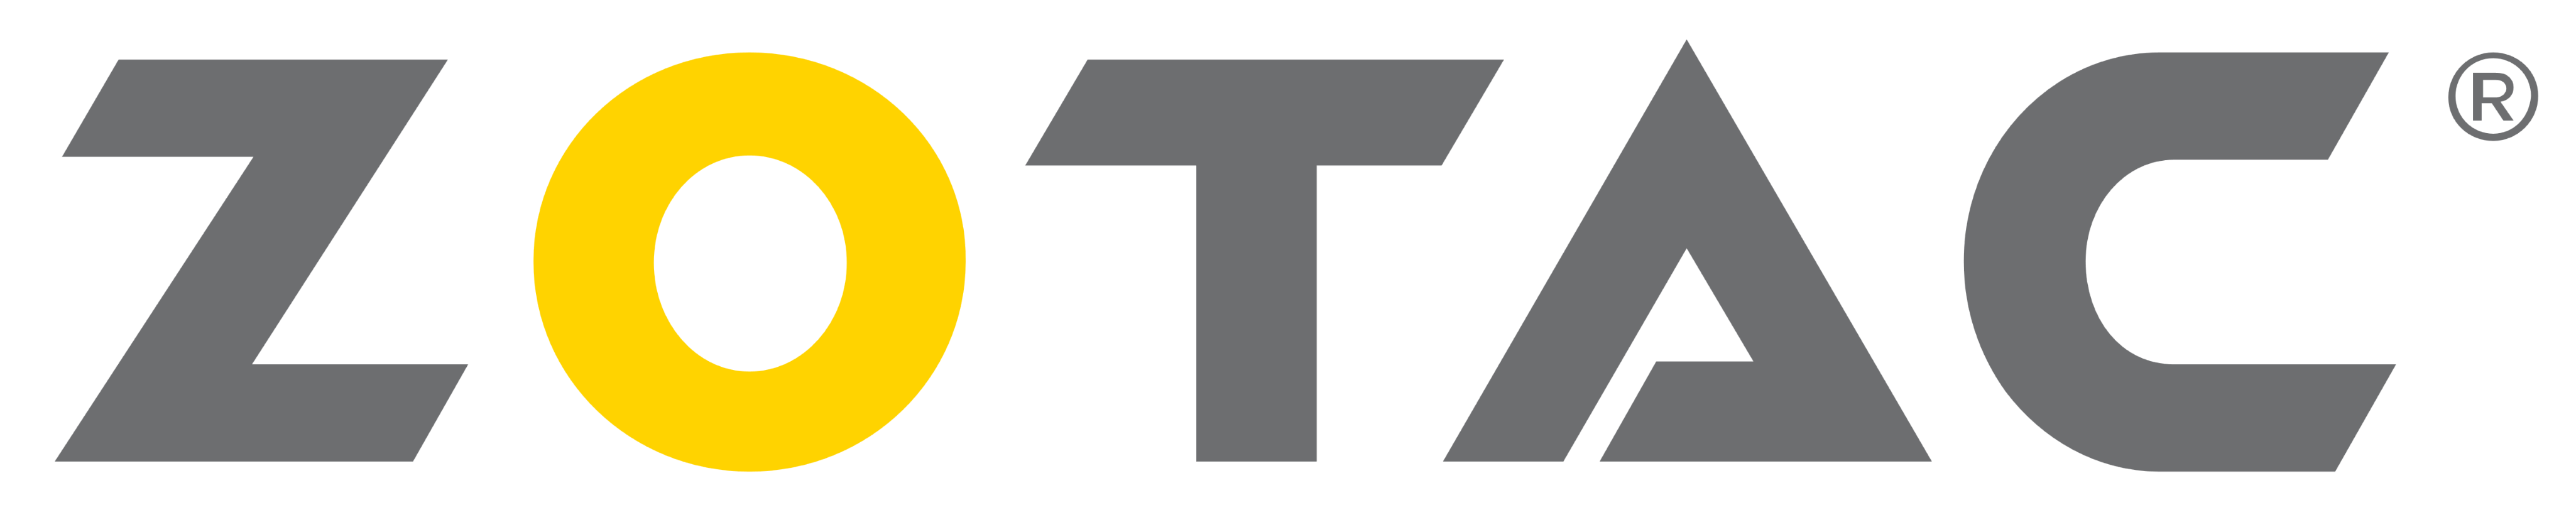 Zotac logo, logotype